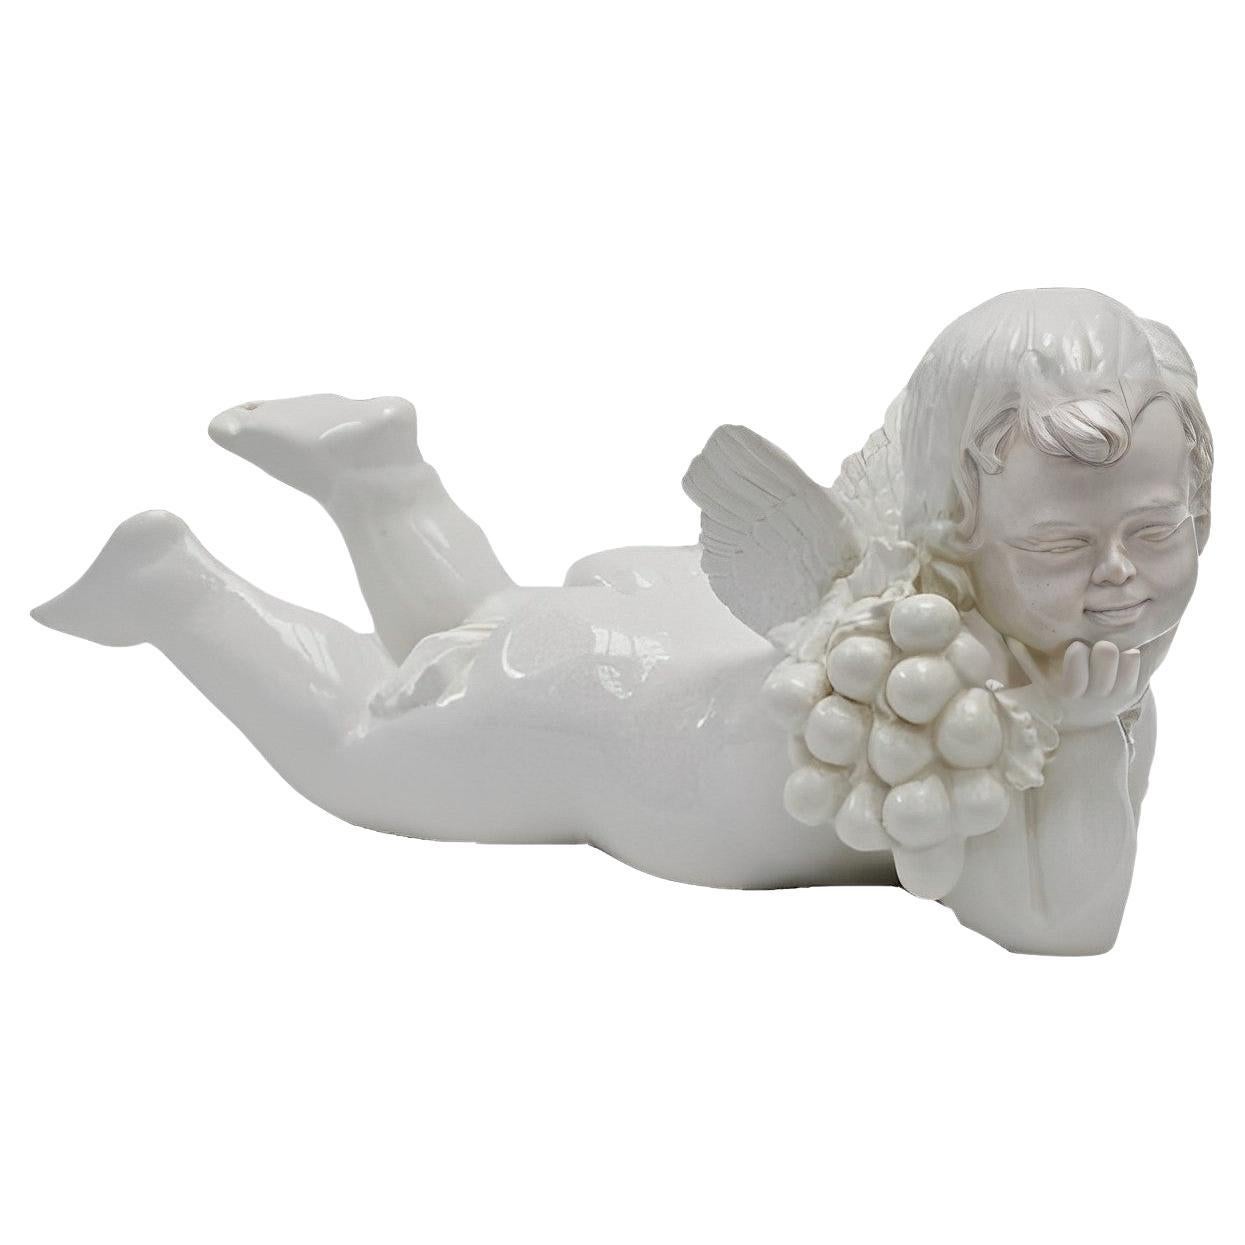 Vietri - Grande figurine italienne de chérubin en céramique émaillée blanche craquelée